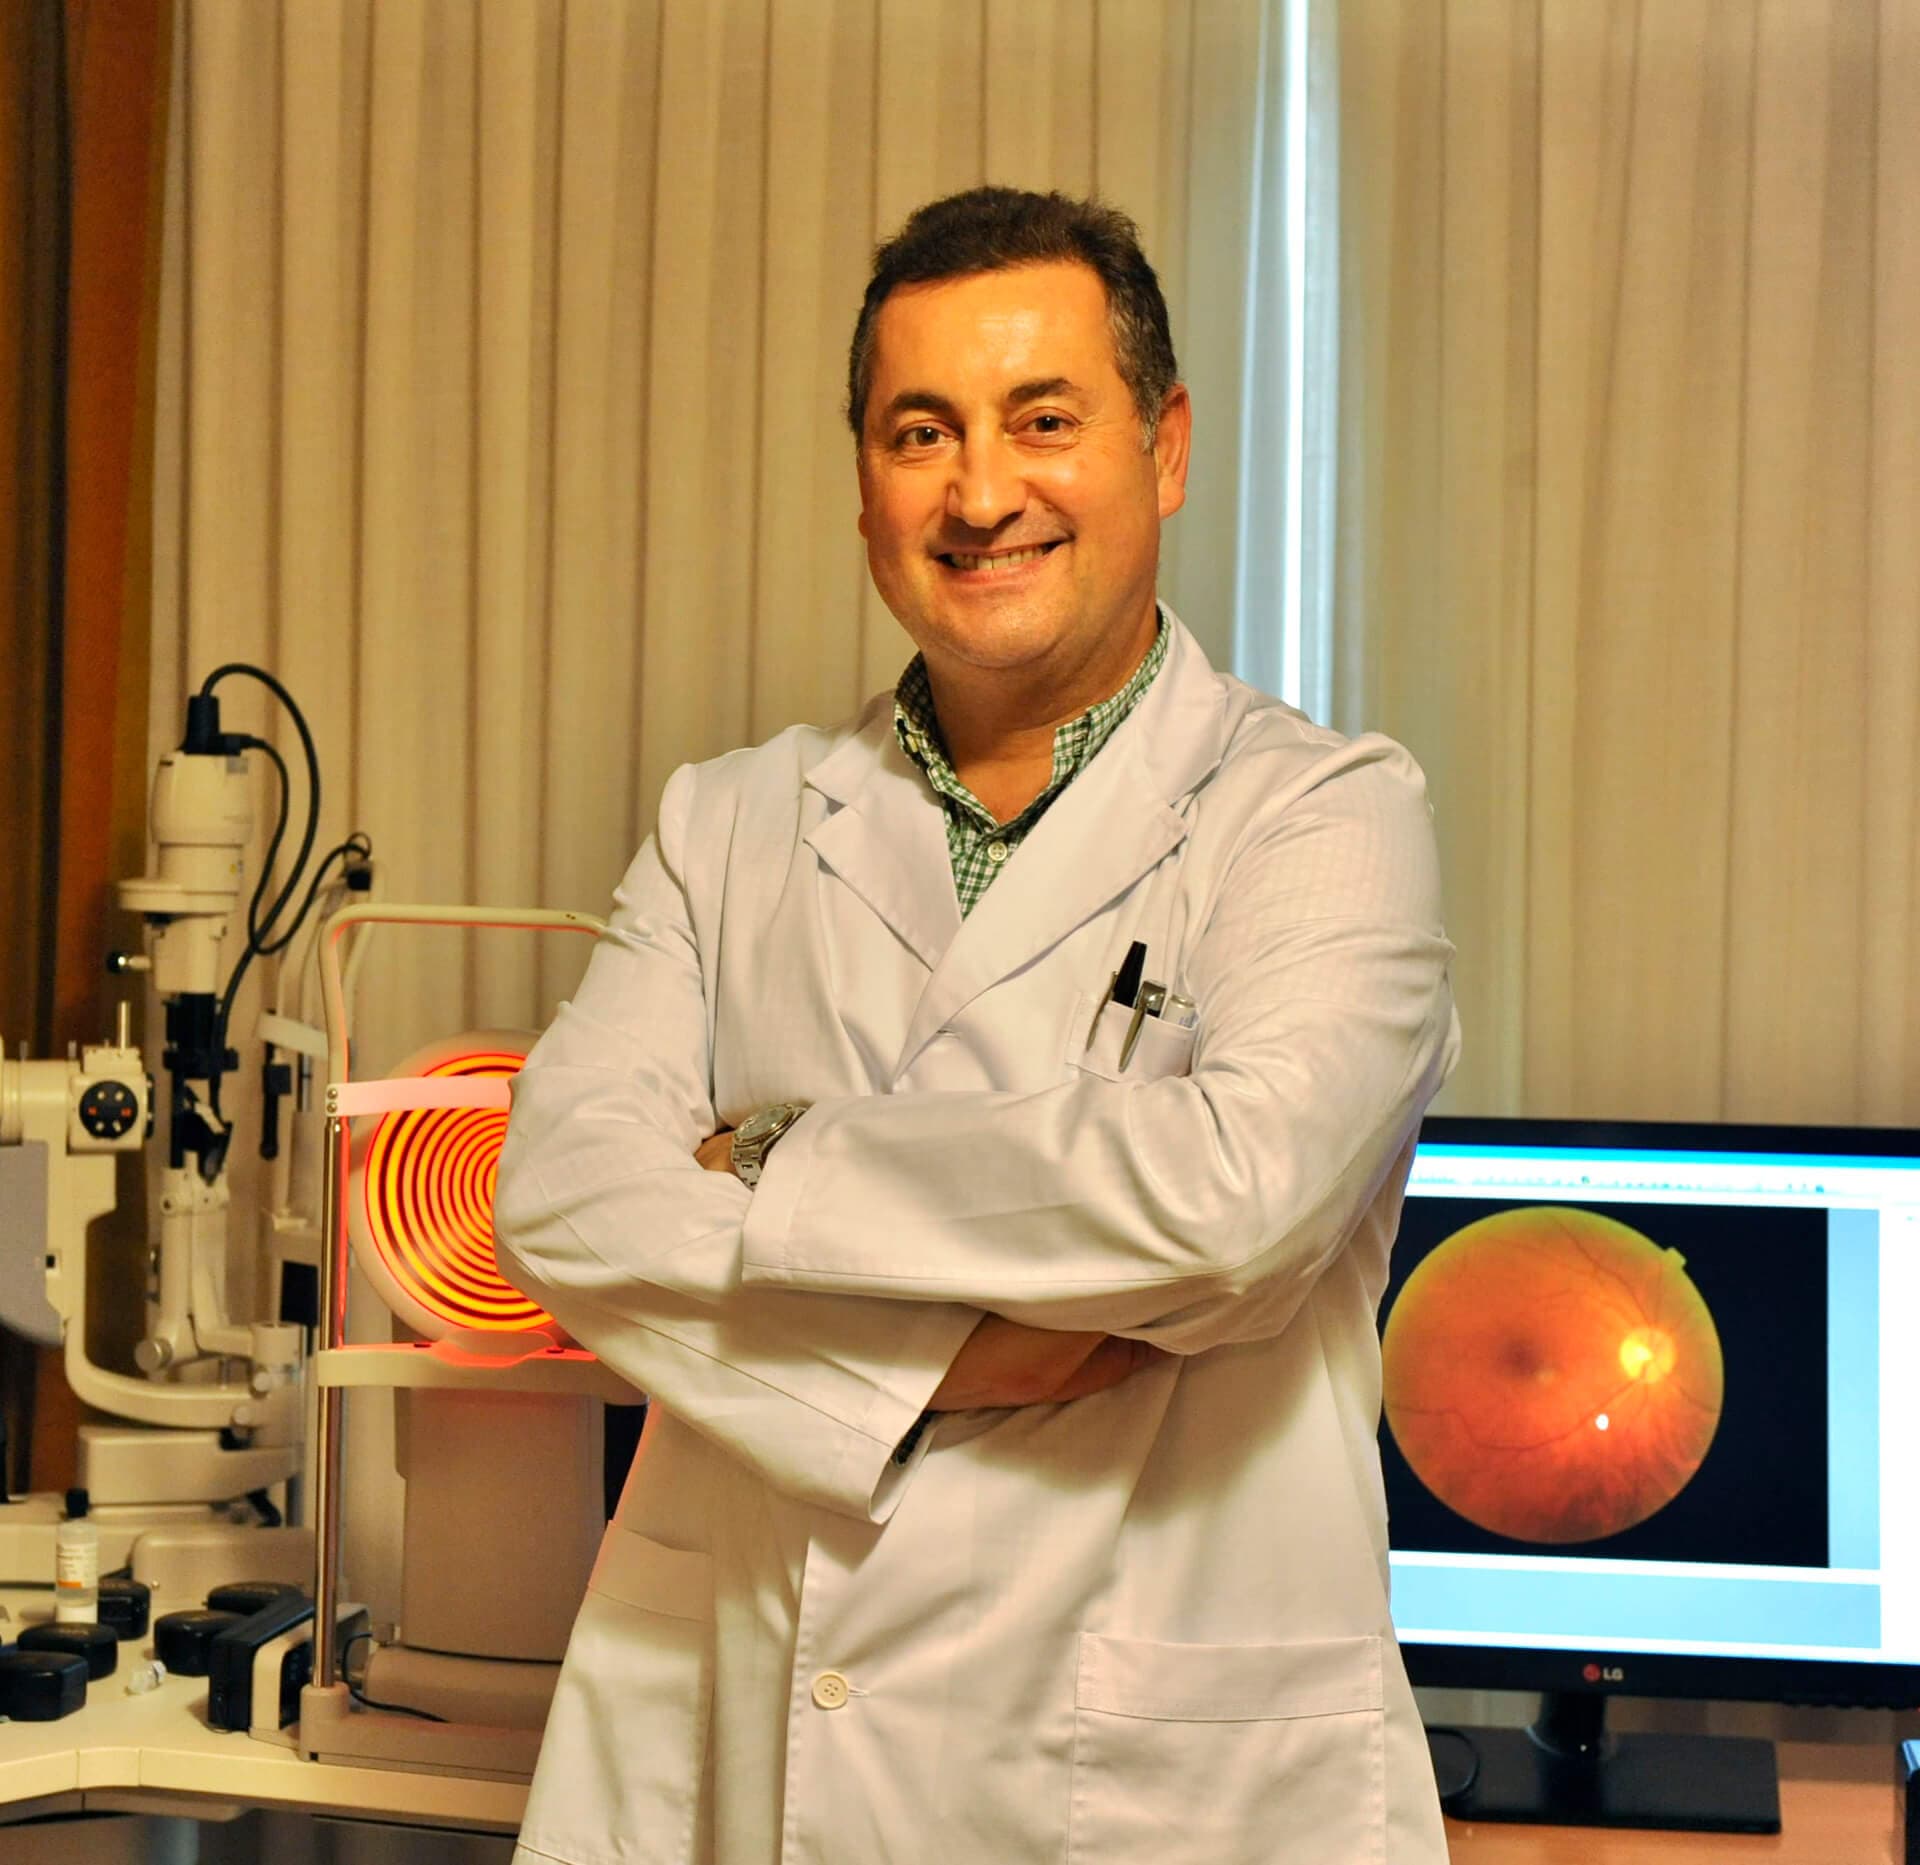 Dr. J. Torreiro